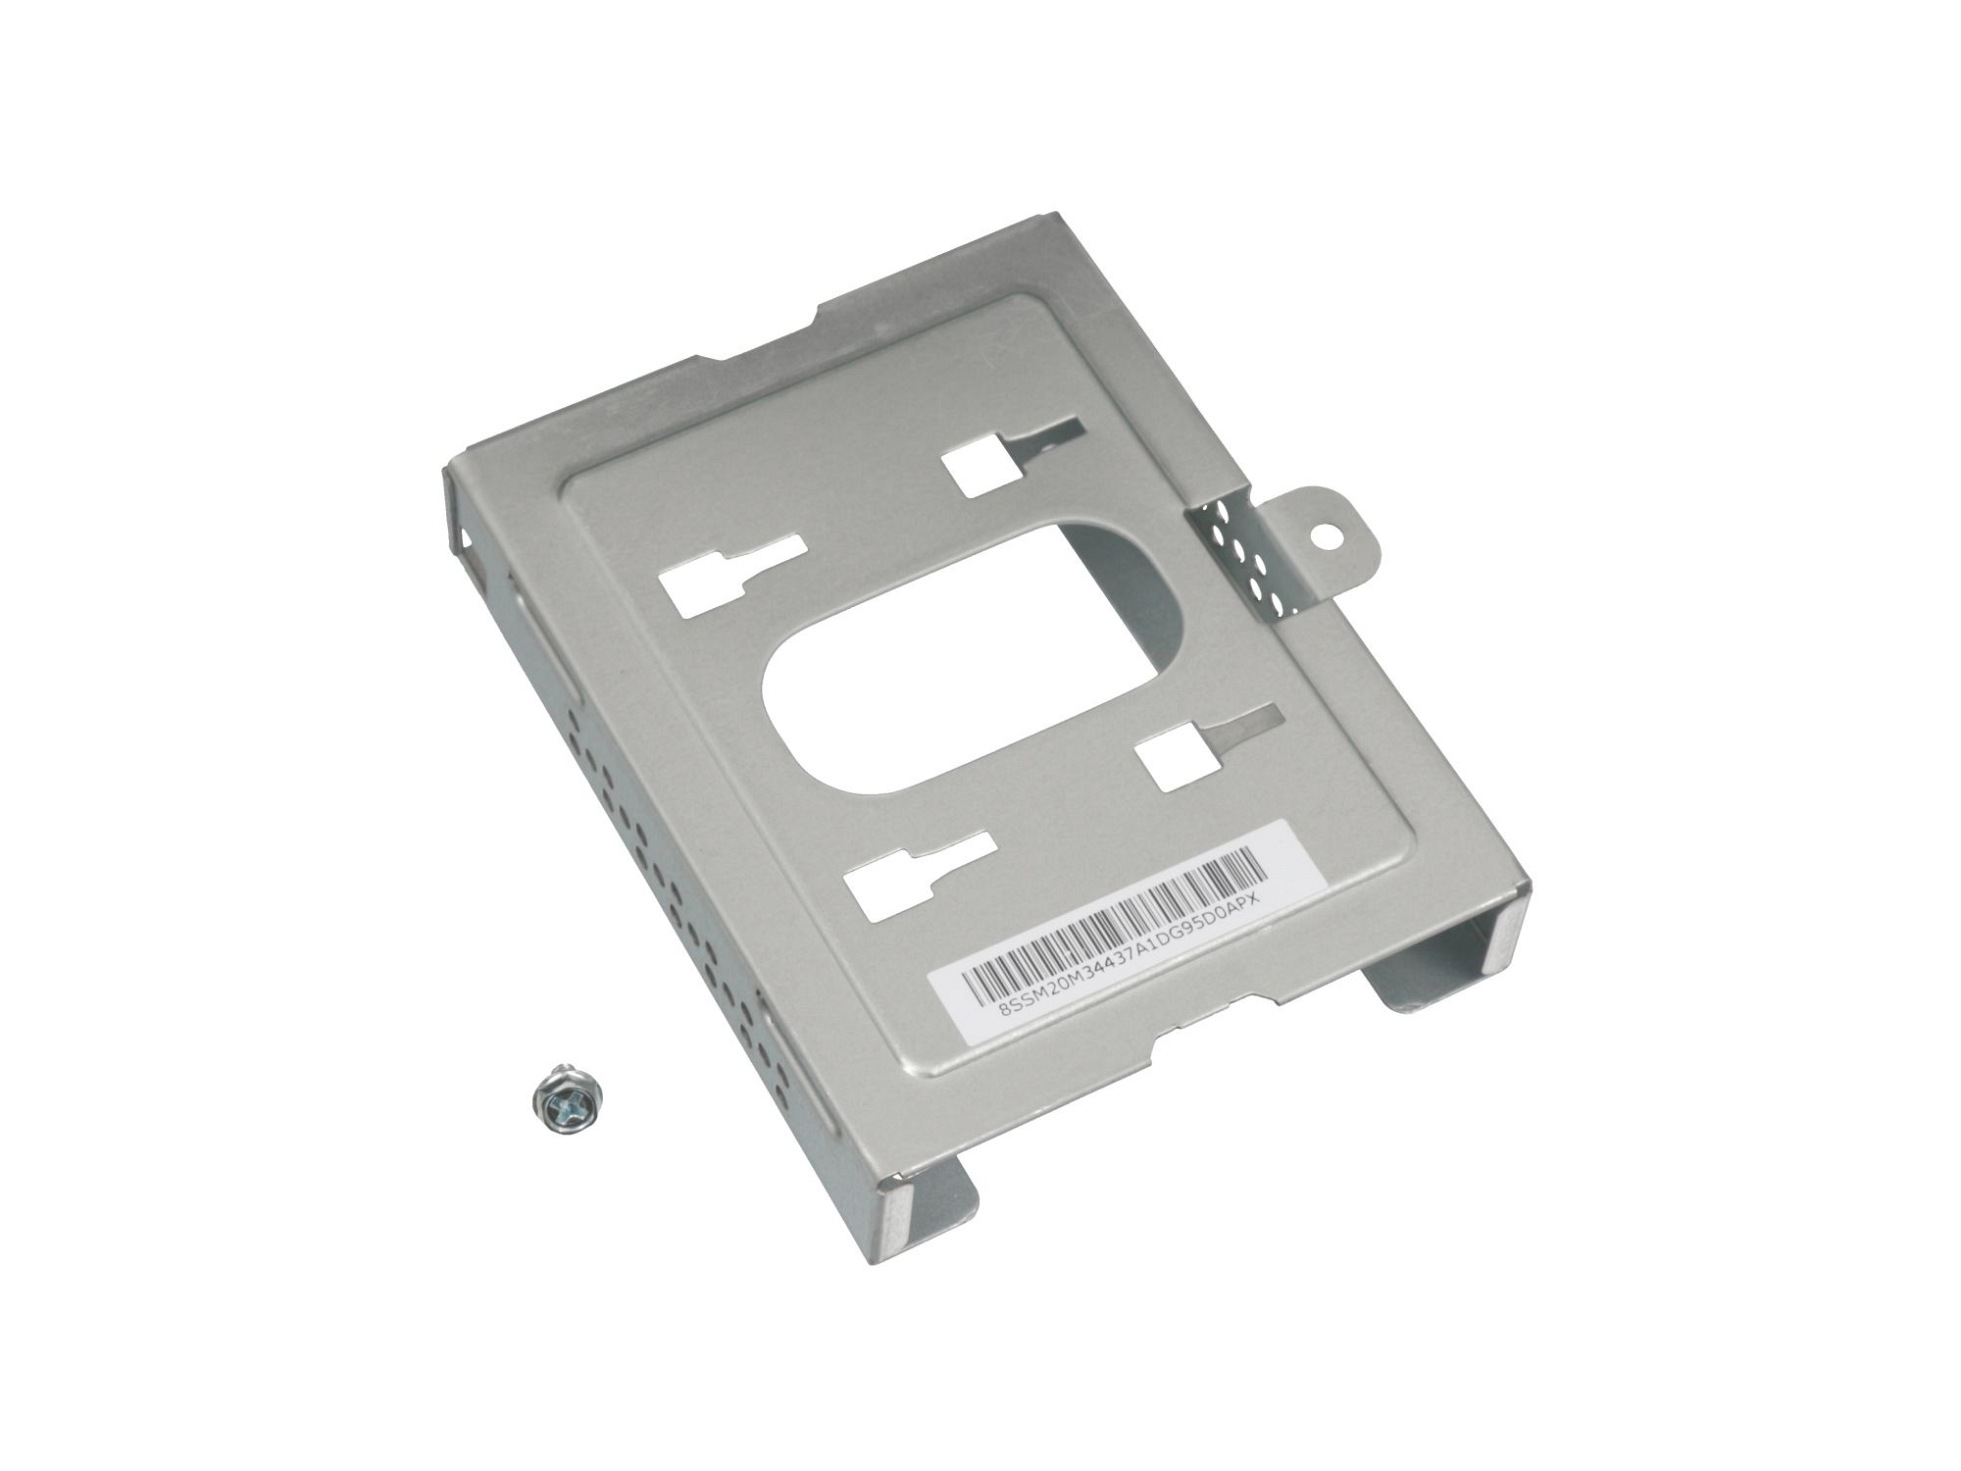 Festplatten-Einbaurahmen für den 1. Festplatten Schacht Original für Lenovo M720T (10Sq/10SR/10SW)